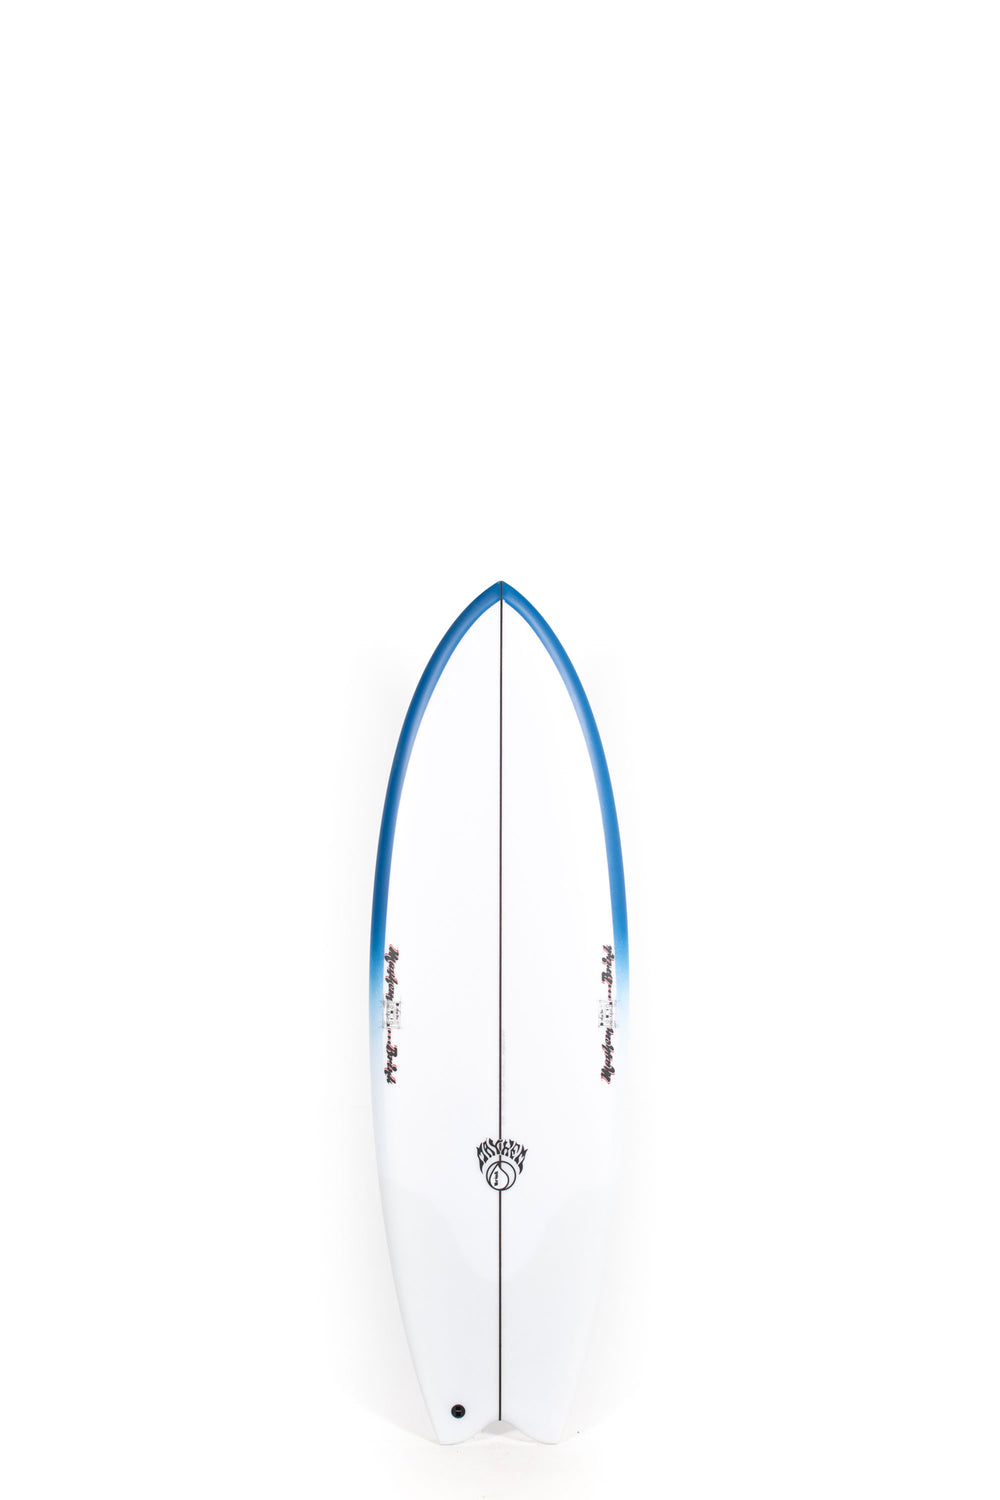 Pukas Surf Shop Lost Surfboard - MICK'S TAPE by Mayhem x Brink - 5’5” x 19,75 x 2,45 - 30,5L - MB00017